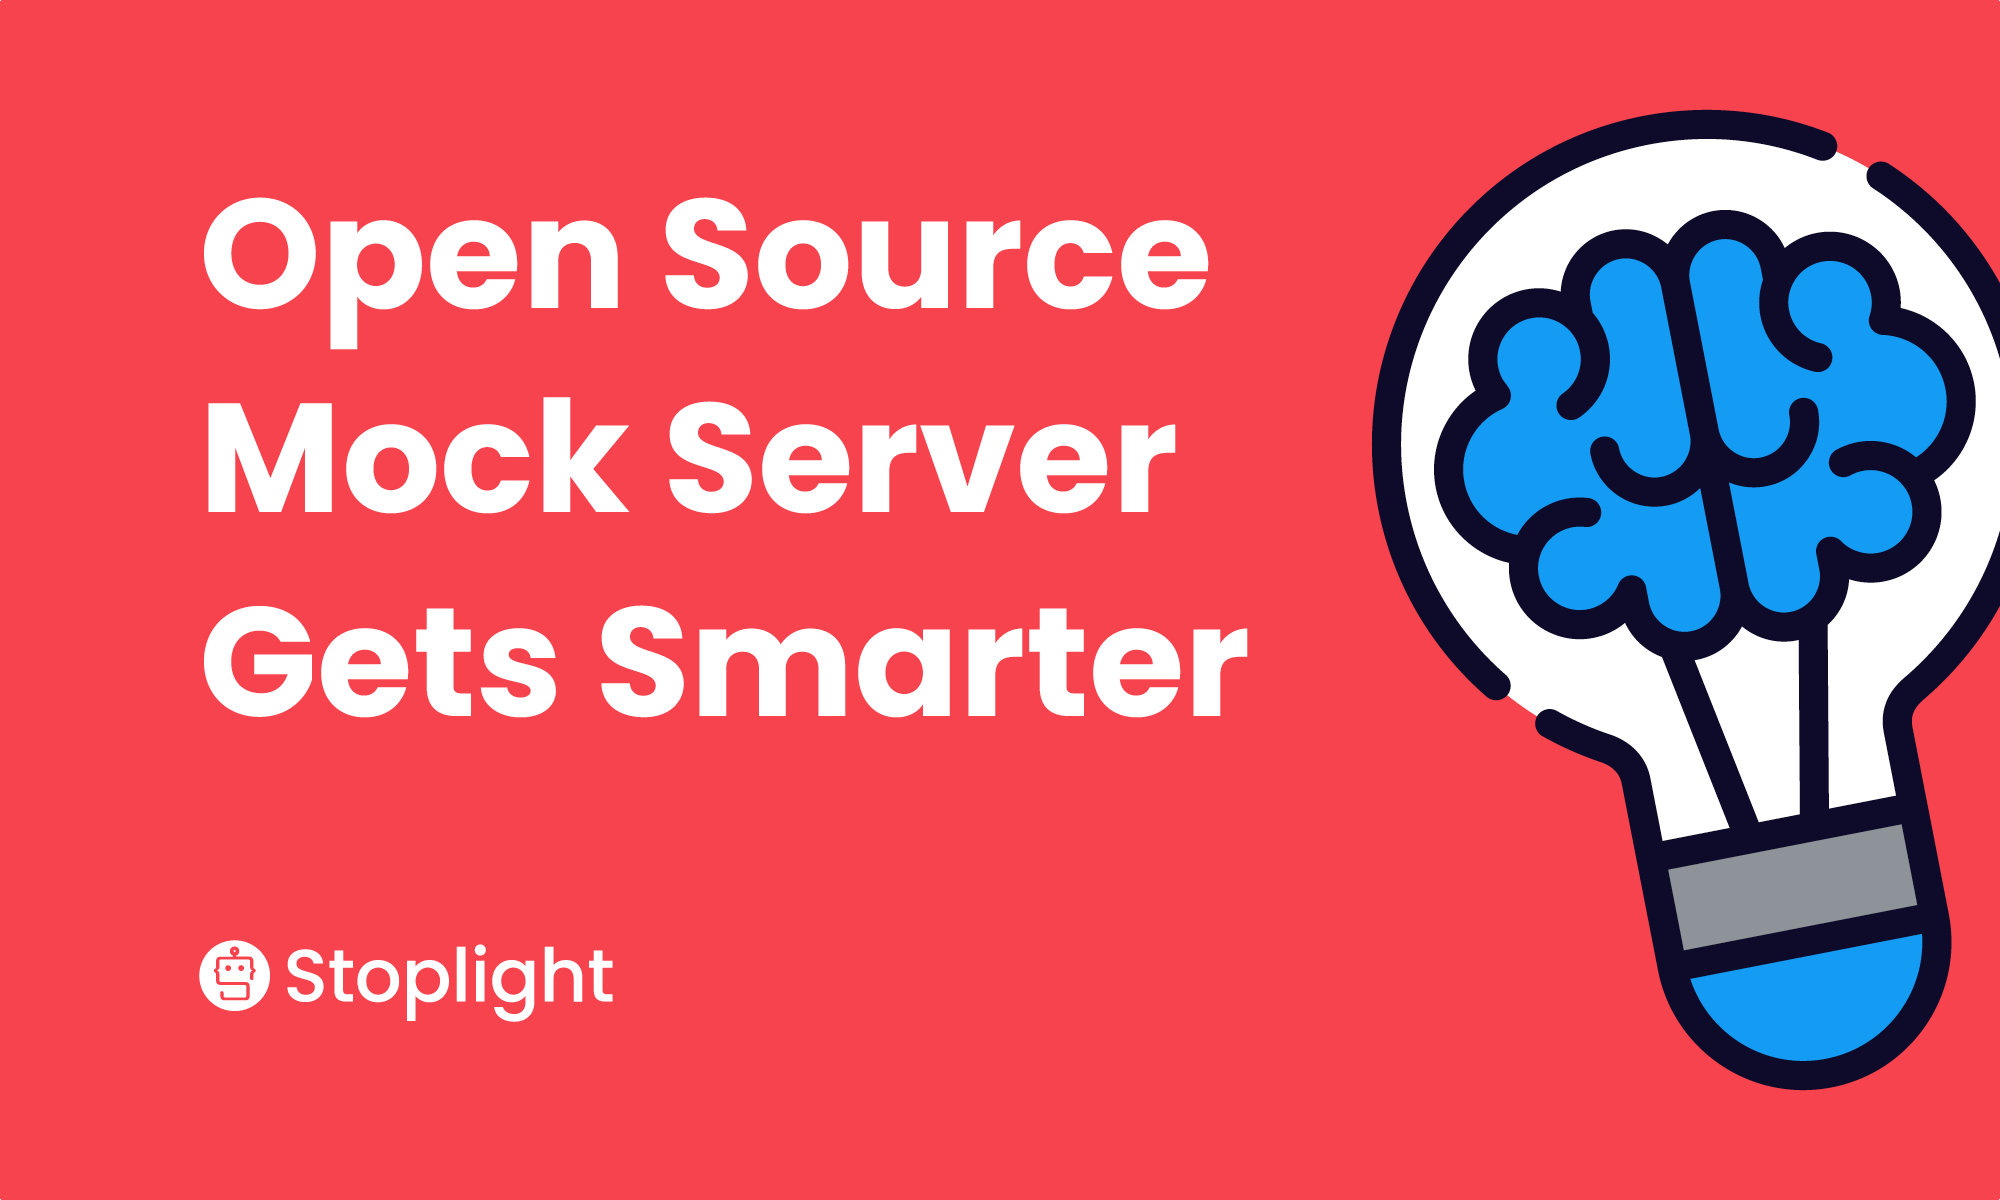 Open Source Mock Server Gets Smarter